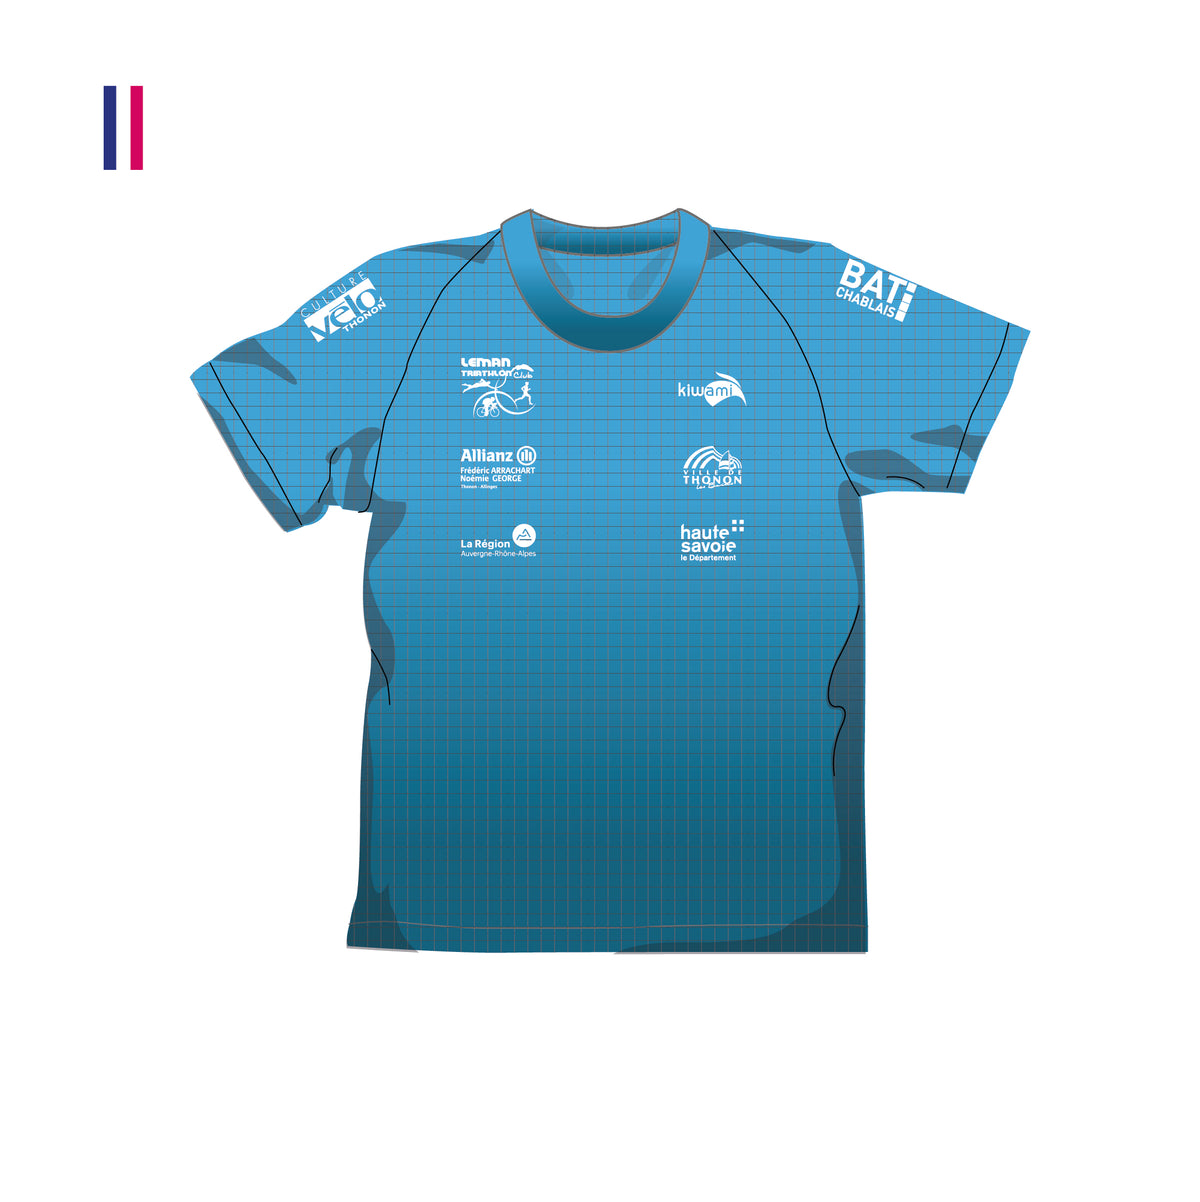 Tee-shirt de running homme Léman triathlon